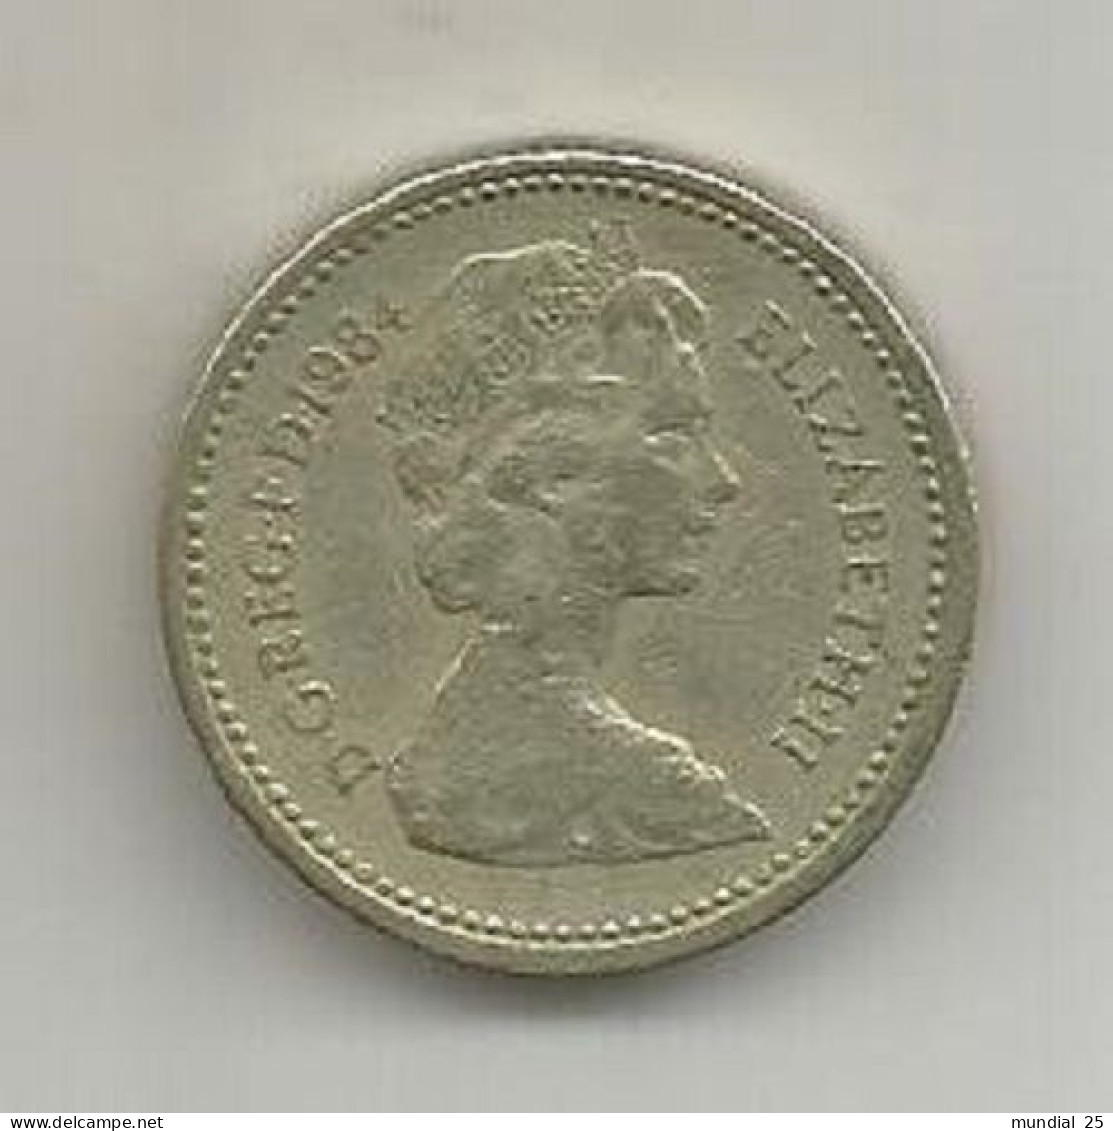 GREAT BRITAIN 1 POUND 1984 - 1 Pound